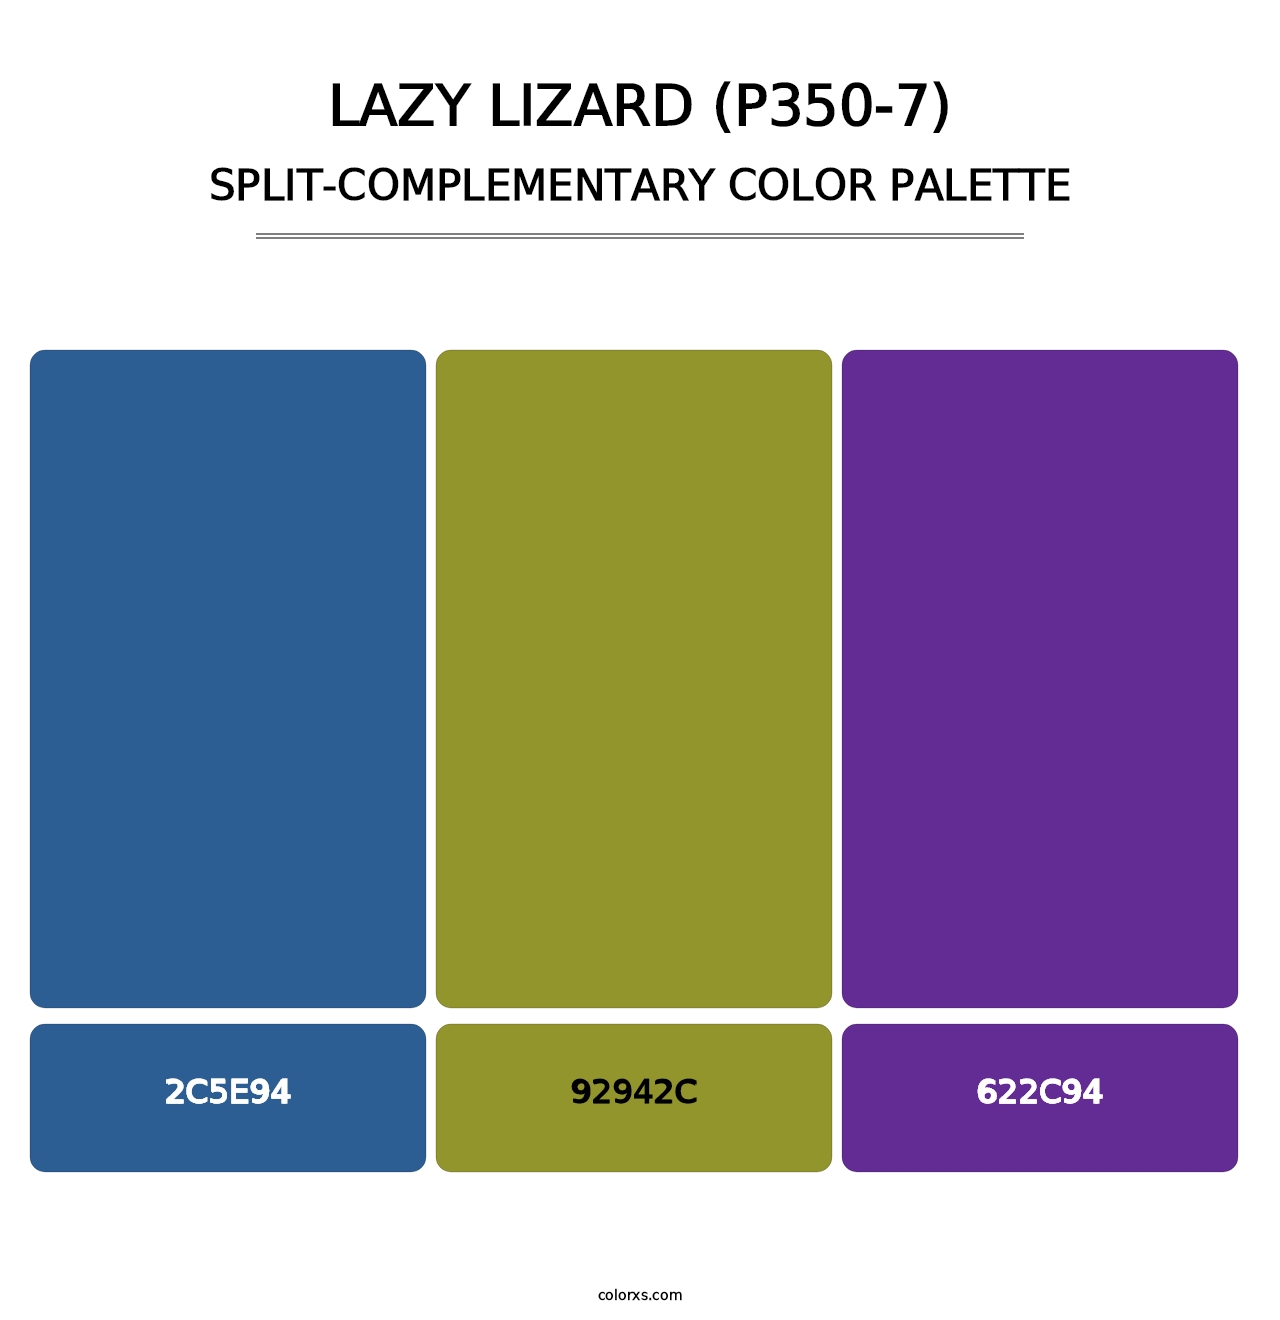 Lazy Lizard (P350-7) - Split-Complementary Color Palette